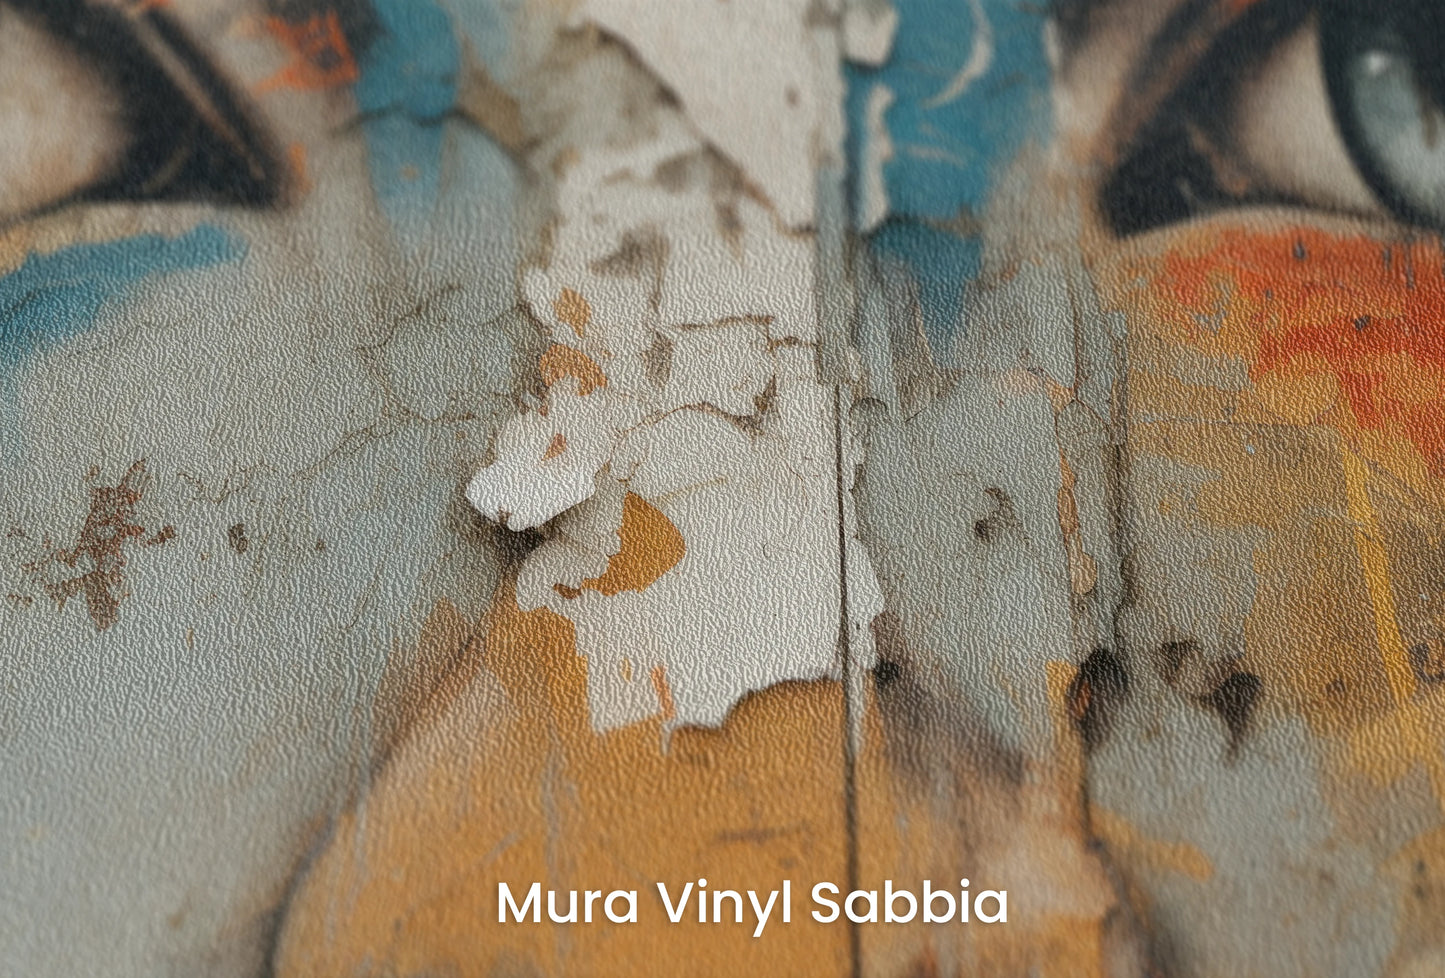 Zbliżenie na artystyczną fototapetę o nazwie Gaze of the City na podłożu Mura Vinyl Sabbia struktura grubego ziarna piasku.